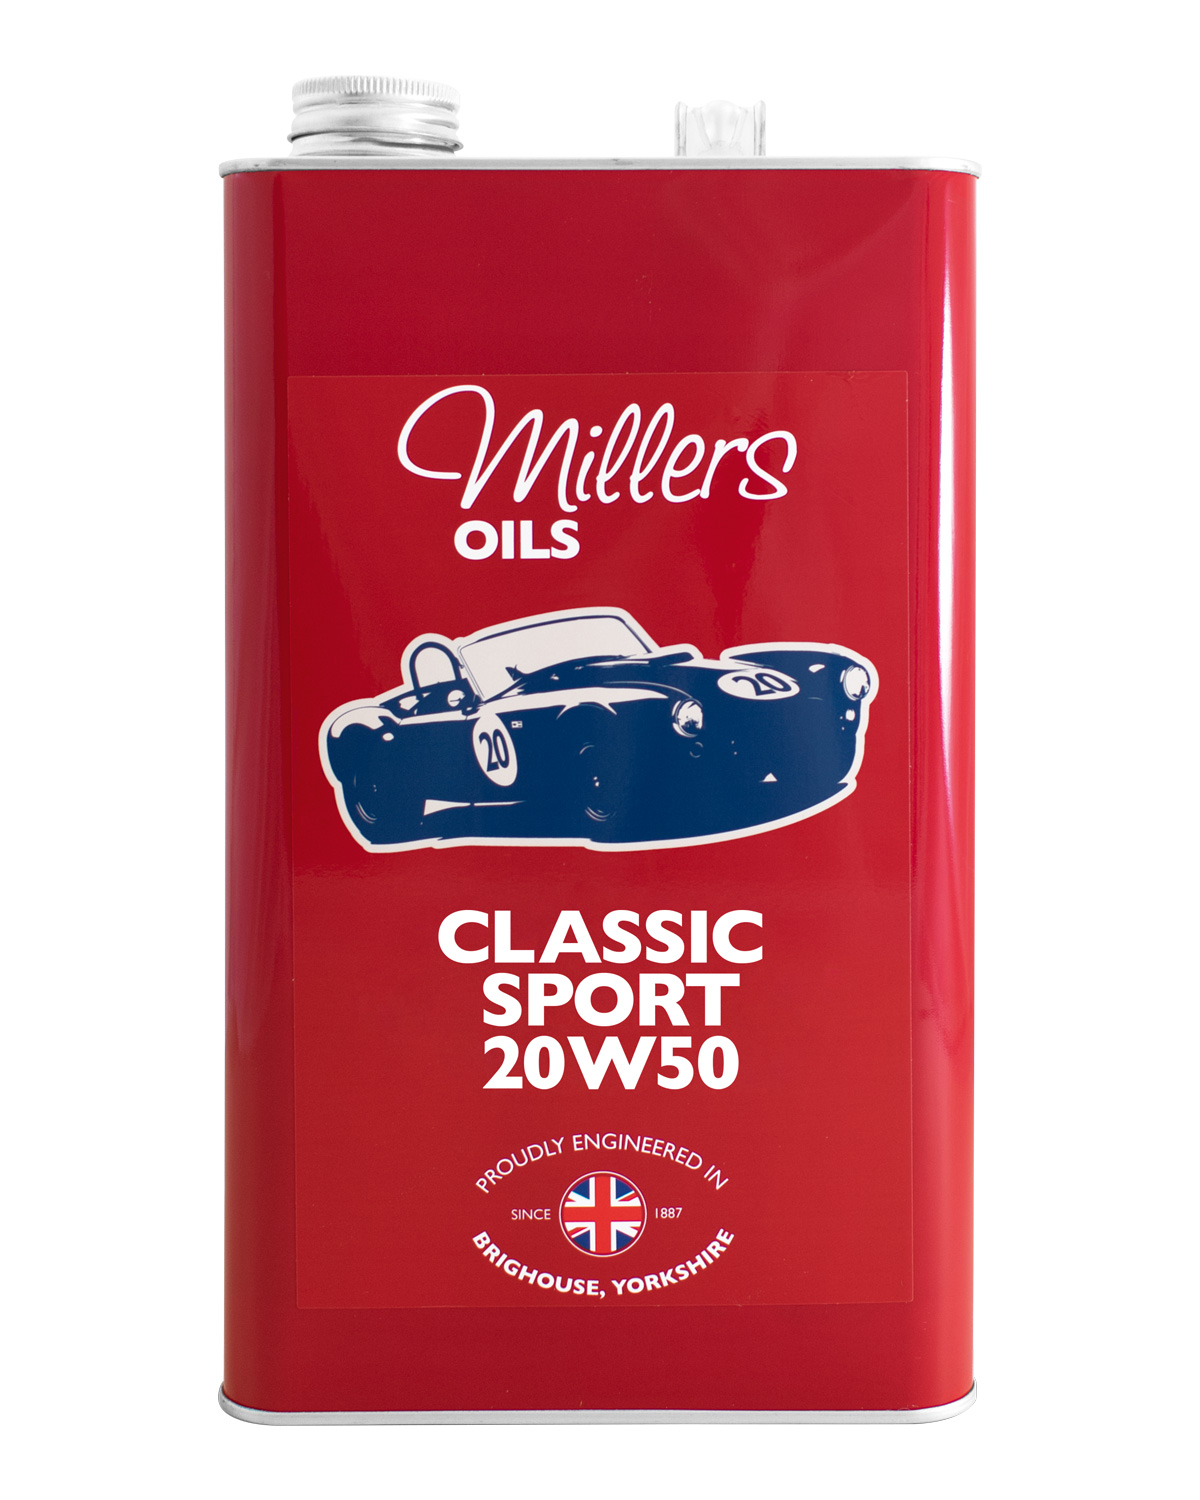 Millers Oils Classic Sport 20W50, 5 Liter